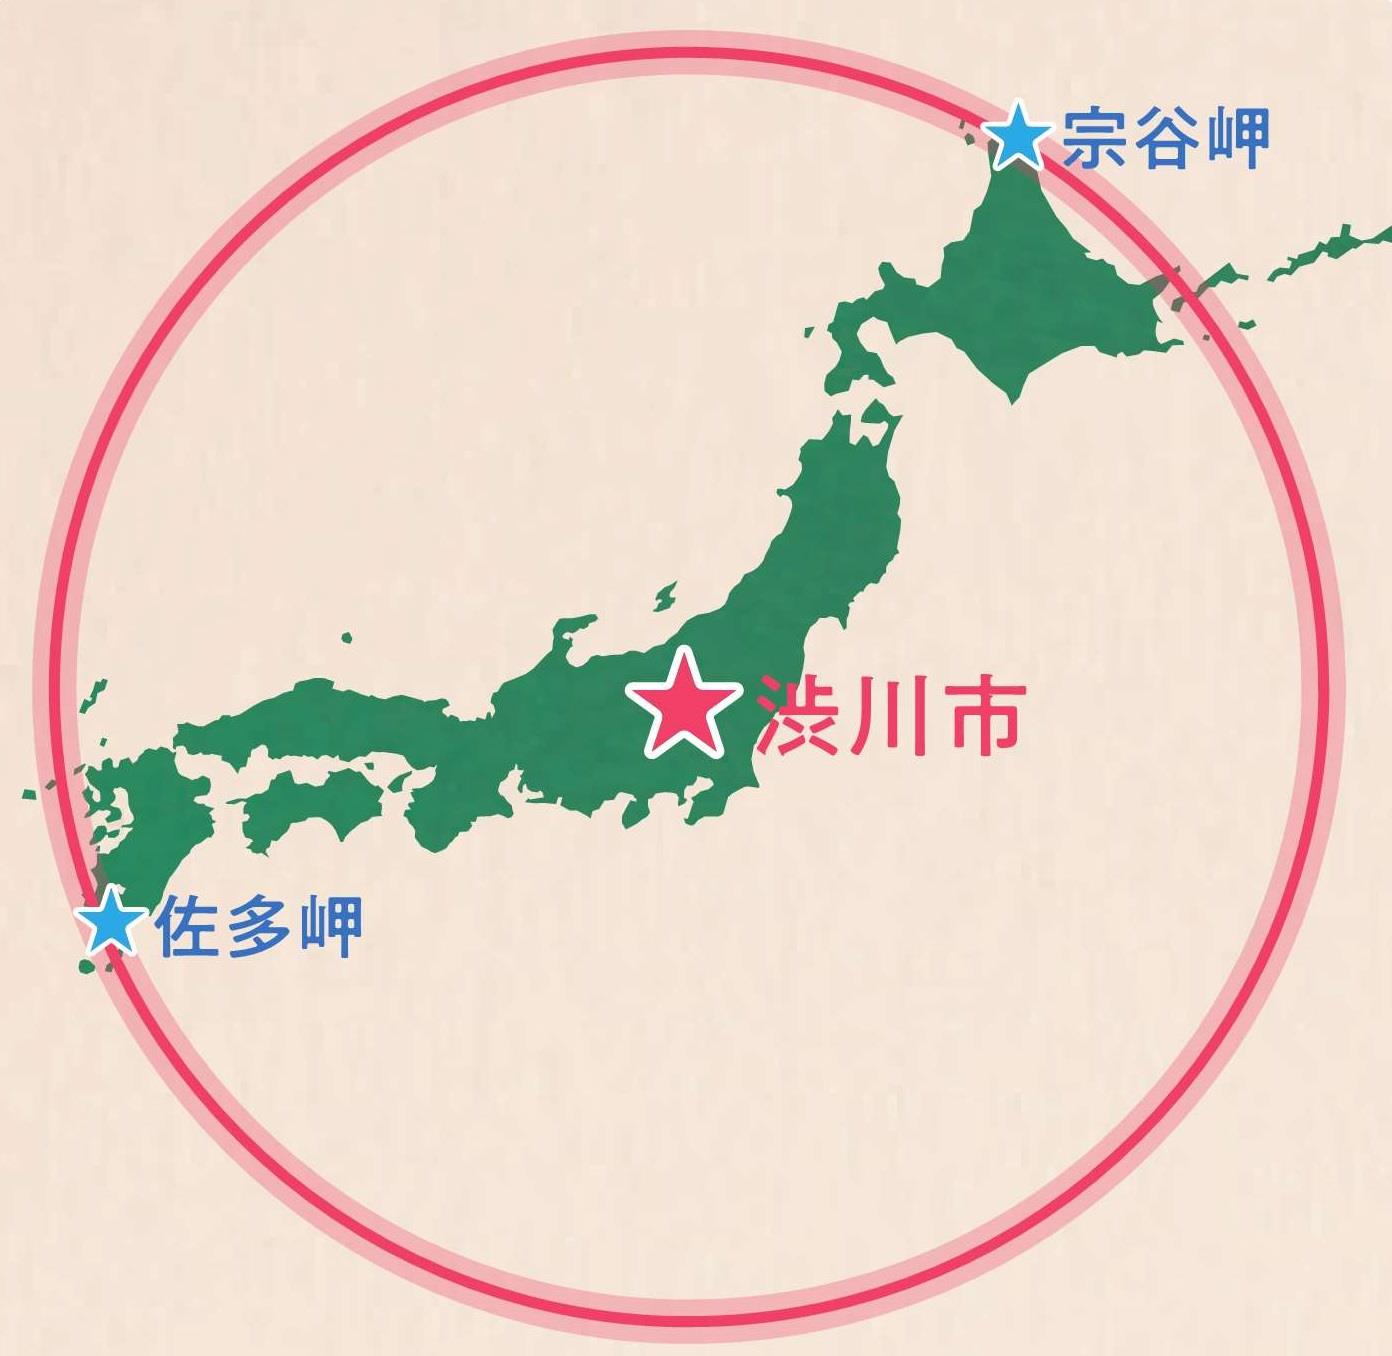 へそのまち 日本のまんなかしぶかわ市 渋川市公式ホームページ